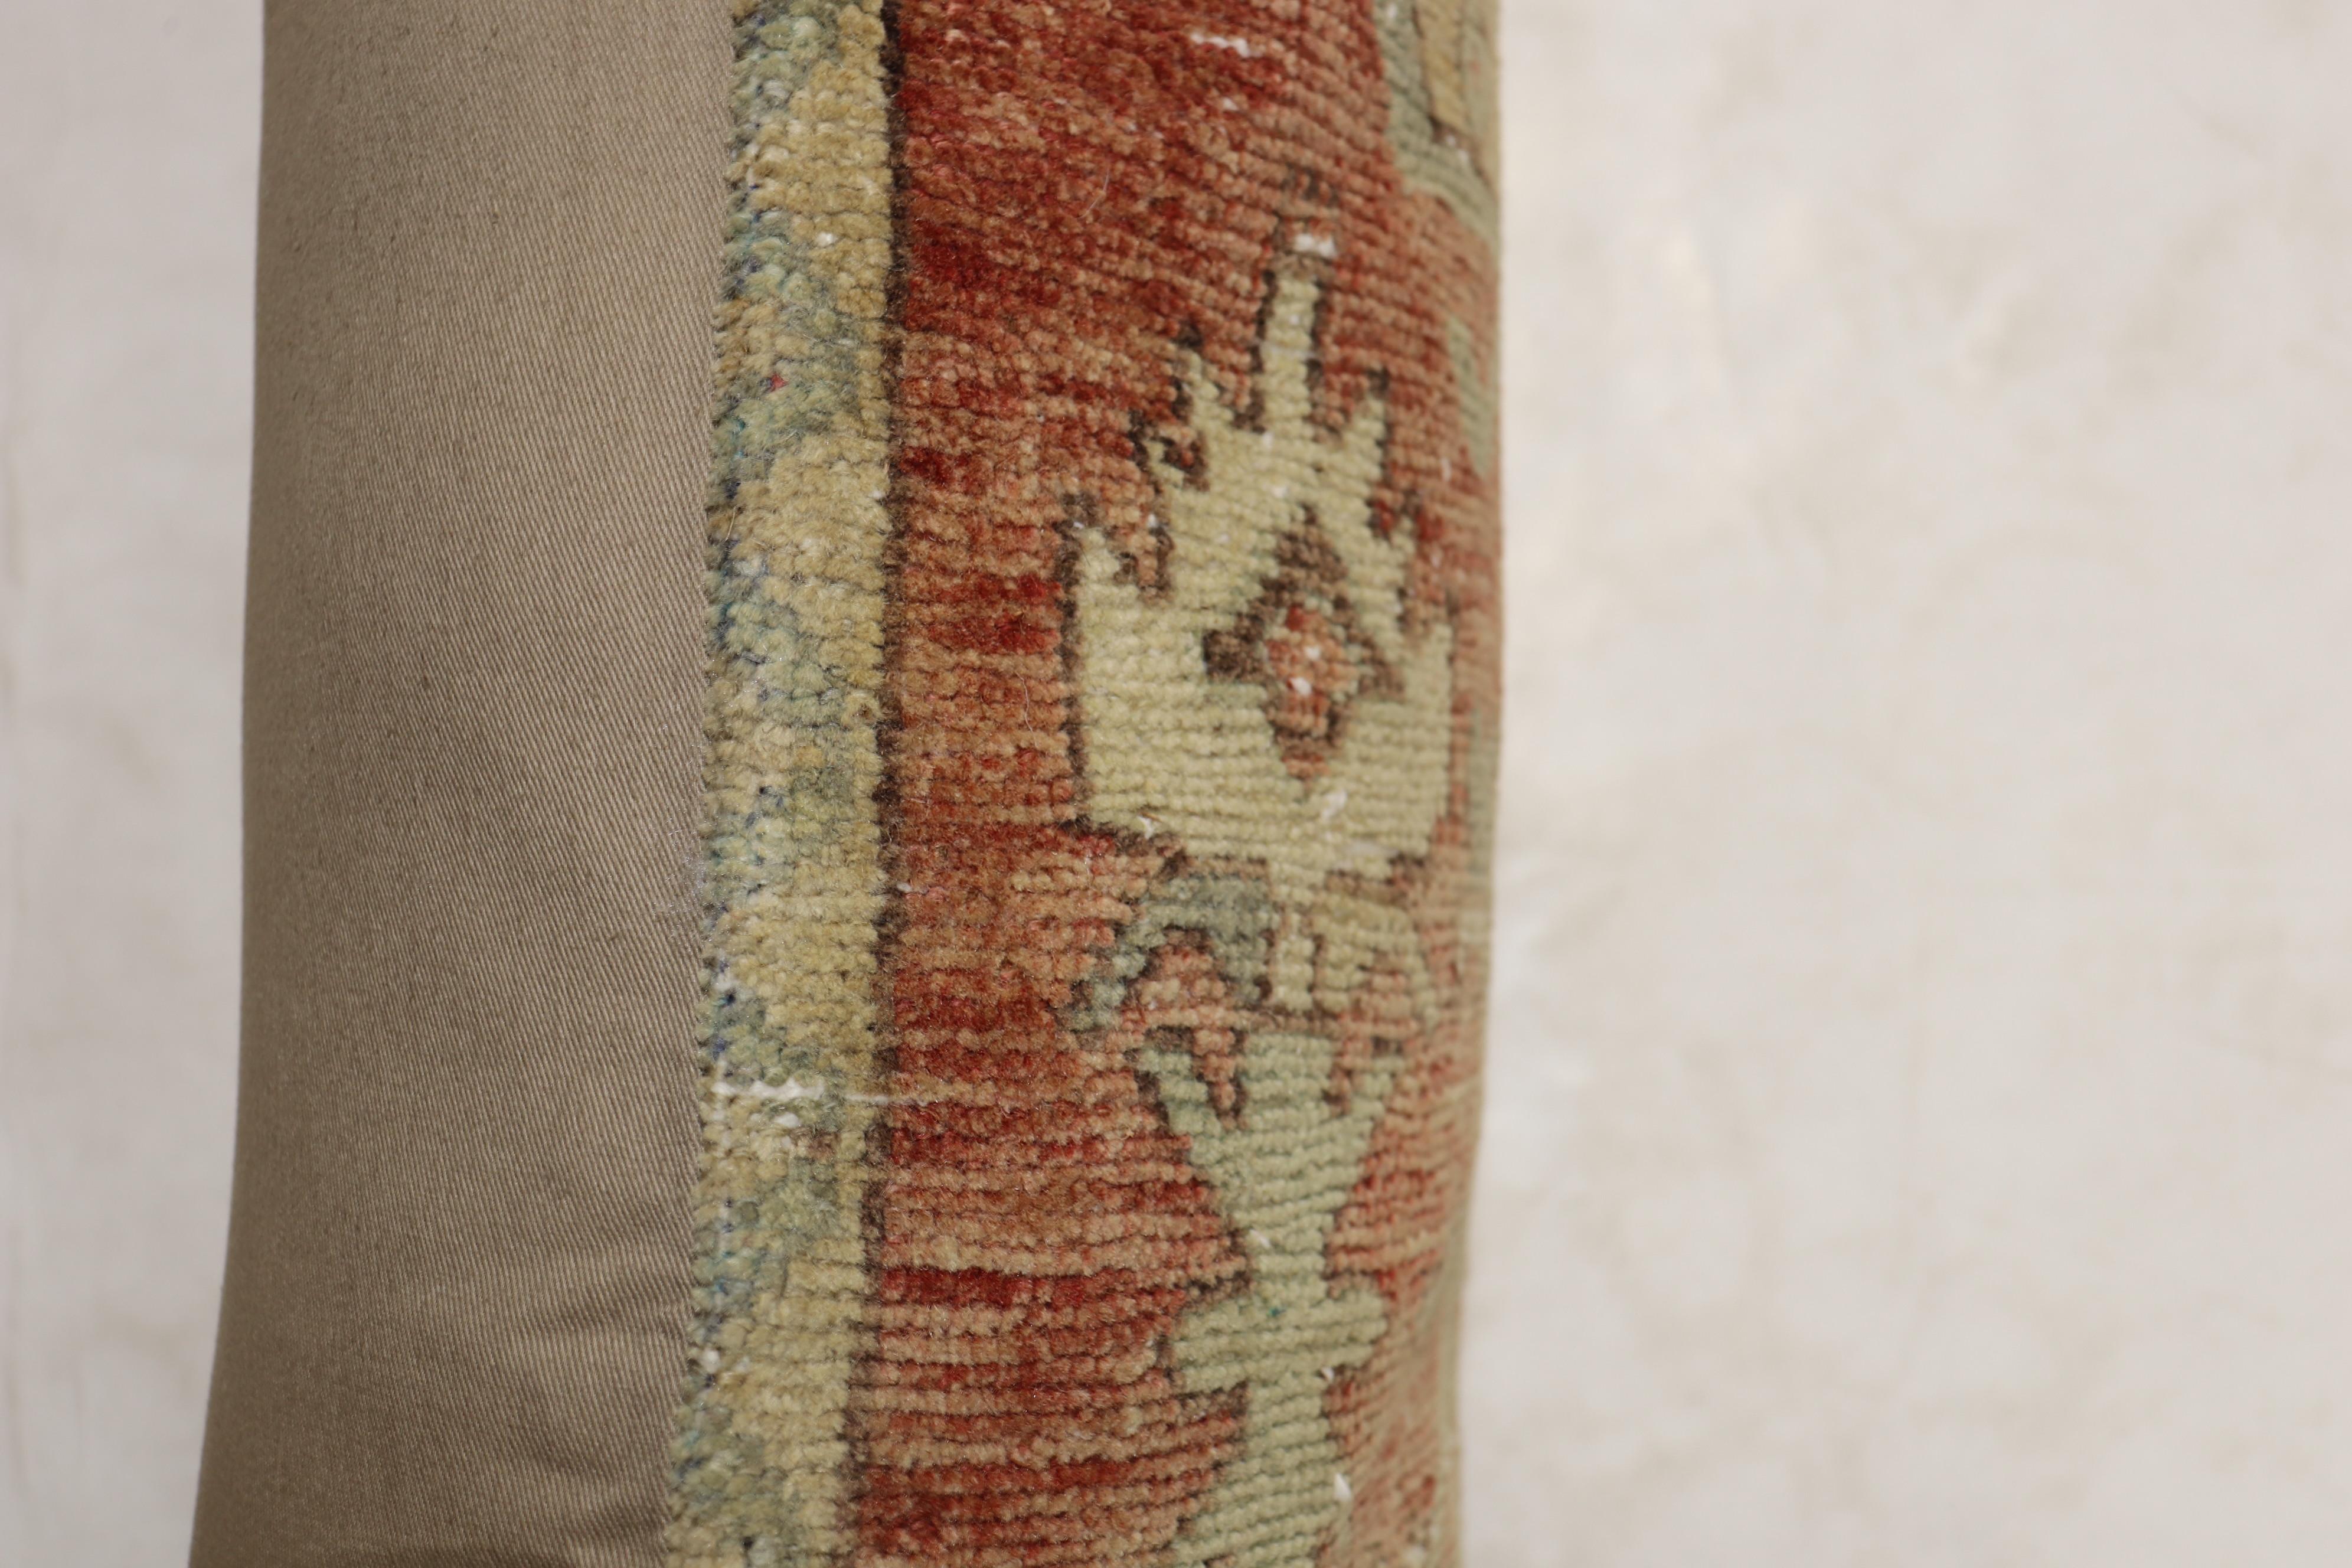 Kissen aus einem türkischen Teppich aus dem frühen 20. Jahrhundert in sanften Farben mit geometrischem Motiv. Mit Reißverschluss und Poly-Fill-Einlage.

Maße: 19